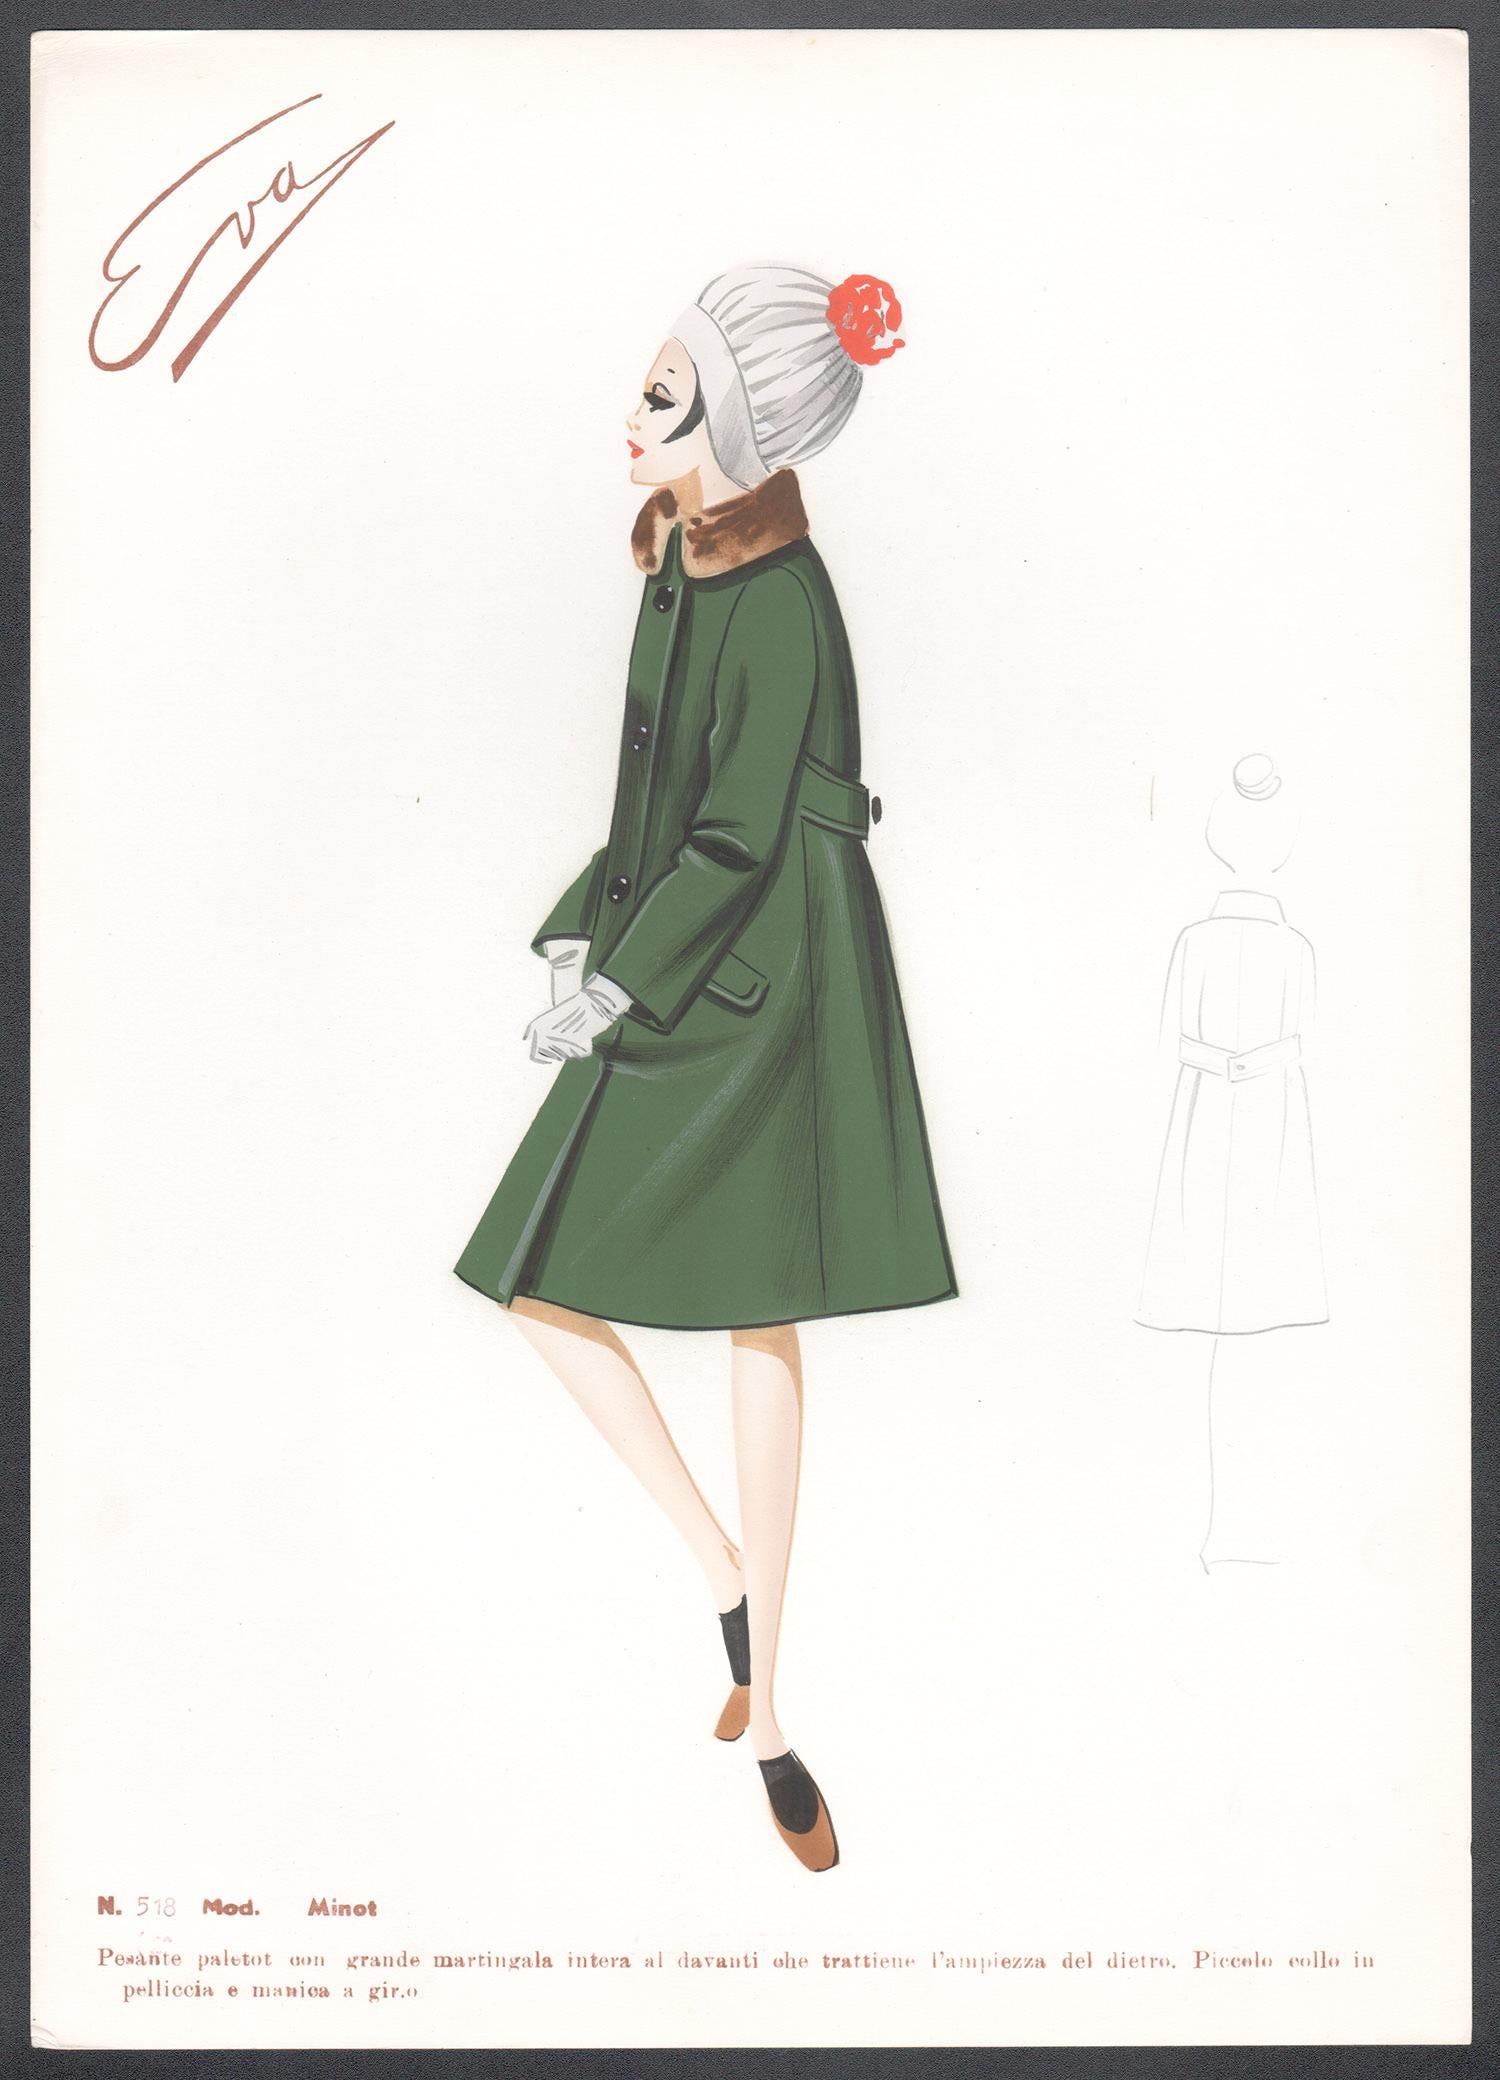 'Minot' Italian 1960s Women's Fashion Design Illustration